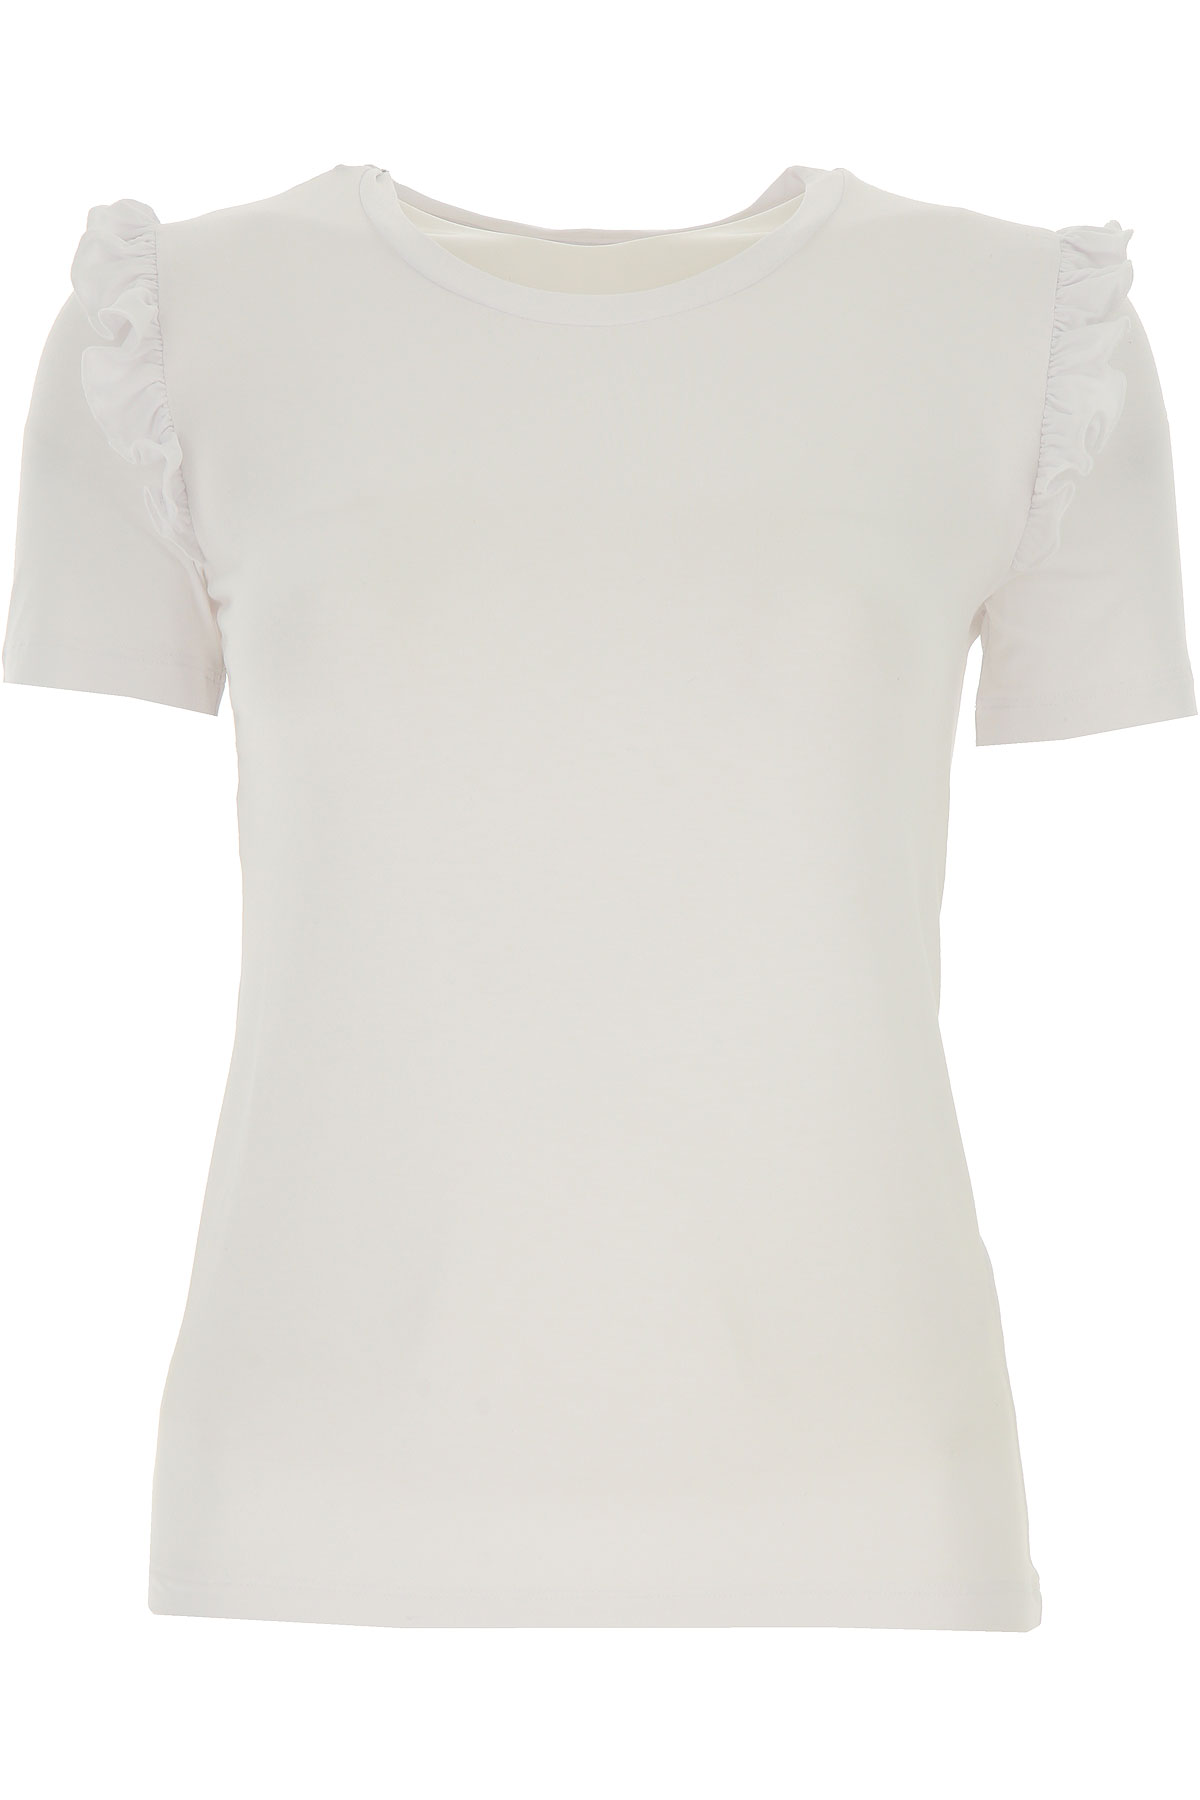 Patrizia Pepe T-shirt Femme, Blanc, Viscose, 2017, 1a -- Eu 38/40 2a -- Eu 40/42 3a -- Eu 42/44